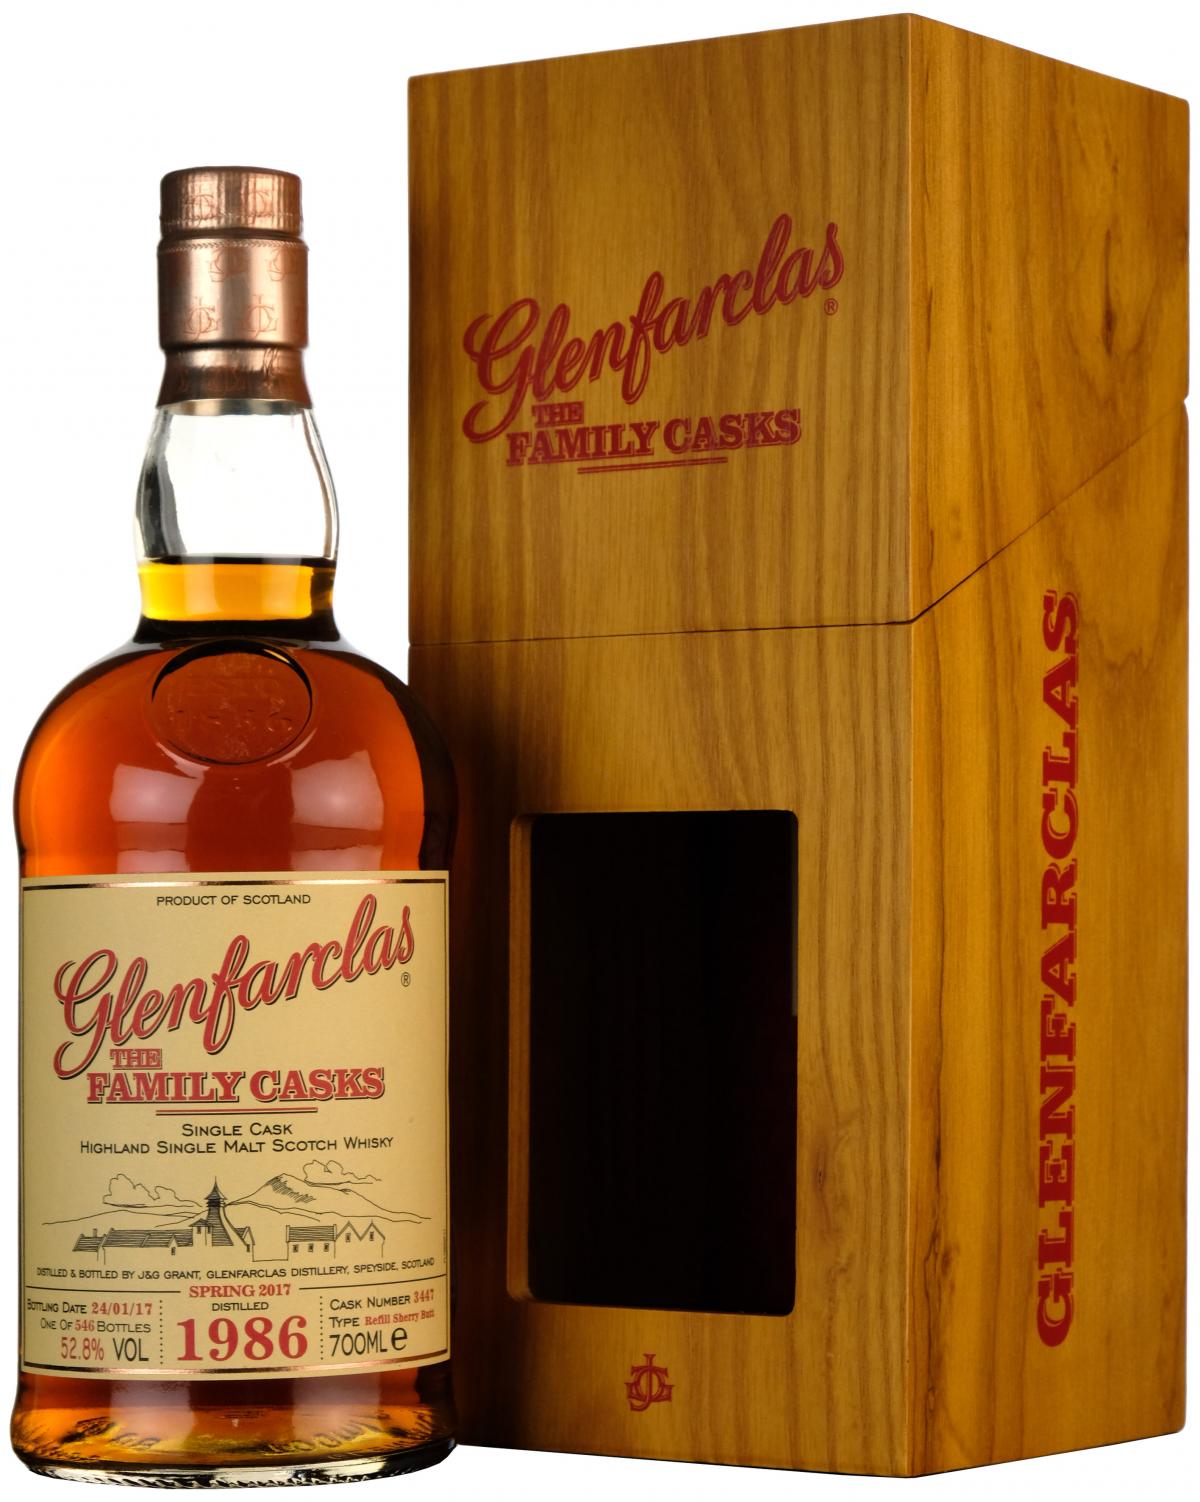 glenfarclas 1986, the family cask 3447, speyside single malt scotch whisky